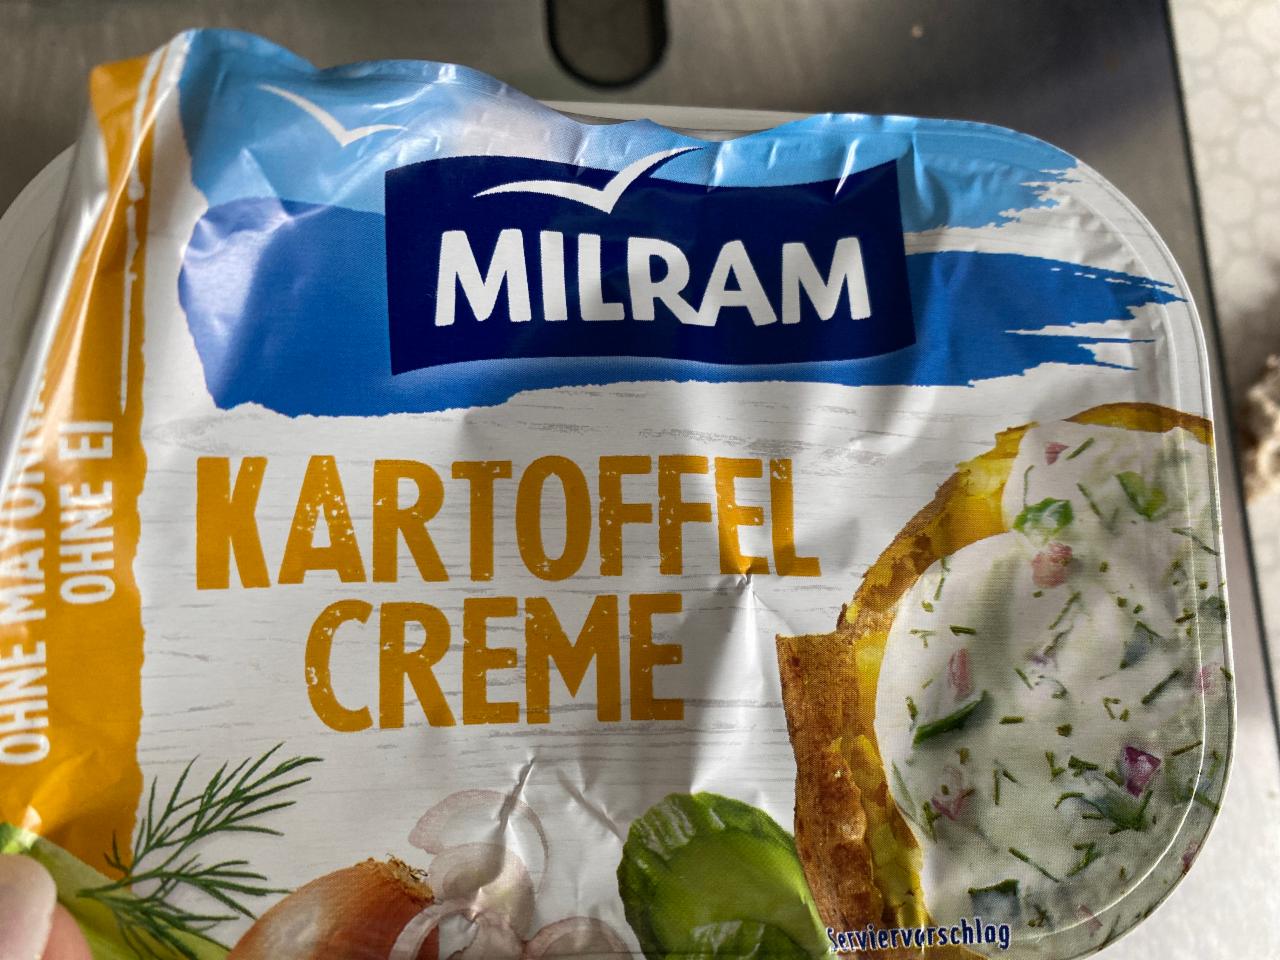 Fotografie - frische kartoffel creme Milram